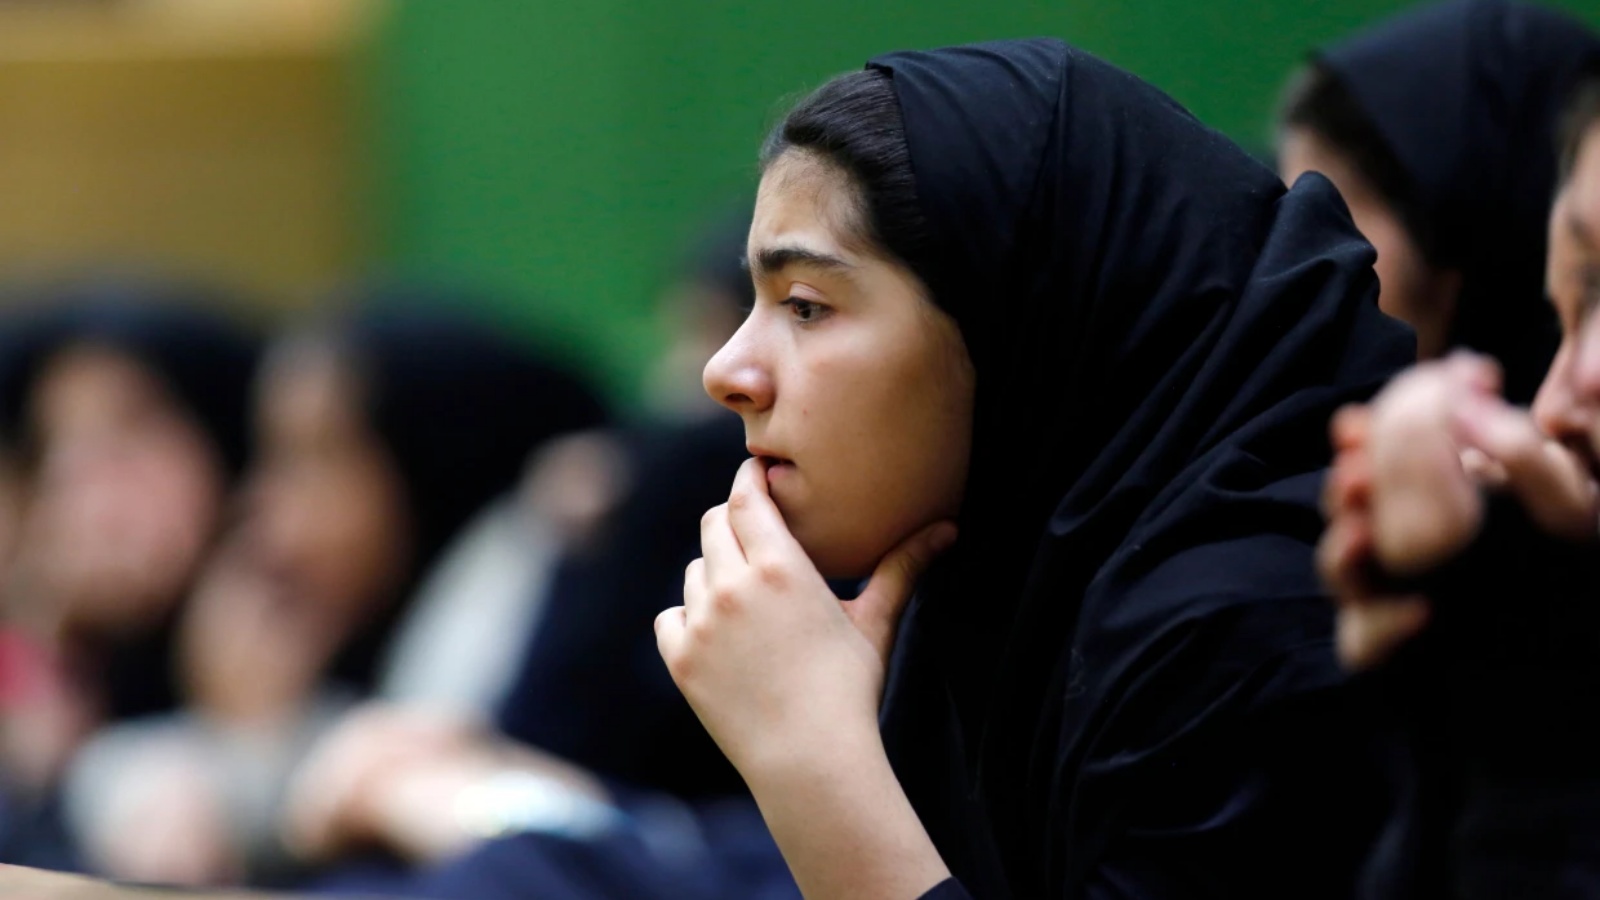 تلميذات المدارس الإيرانيات مستهدفات من قبل جماعة تعارض تعليمهن